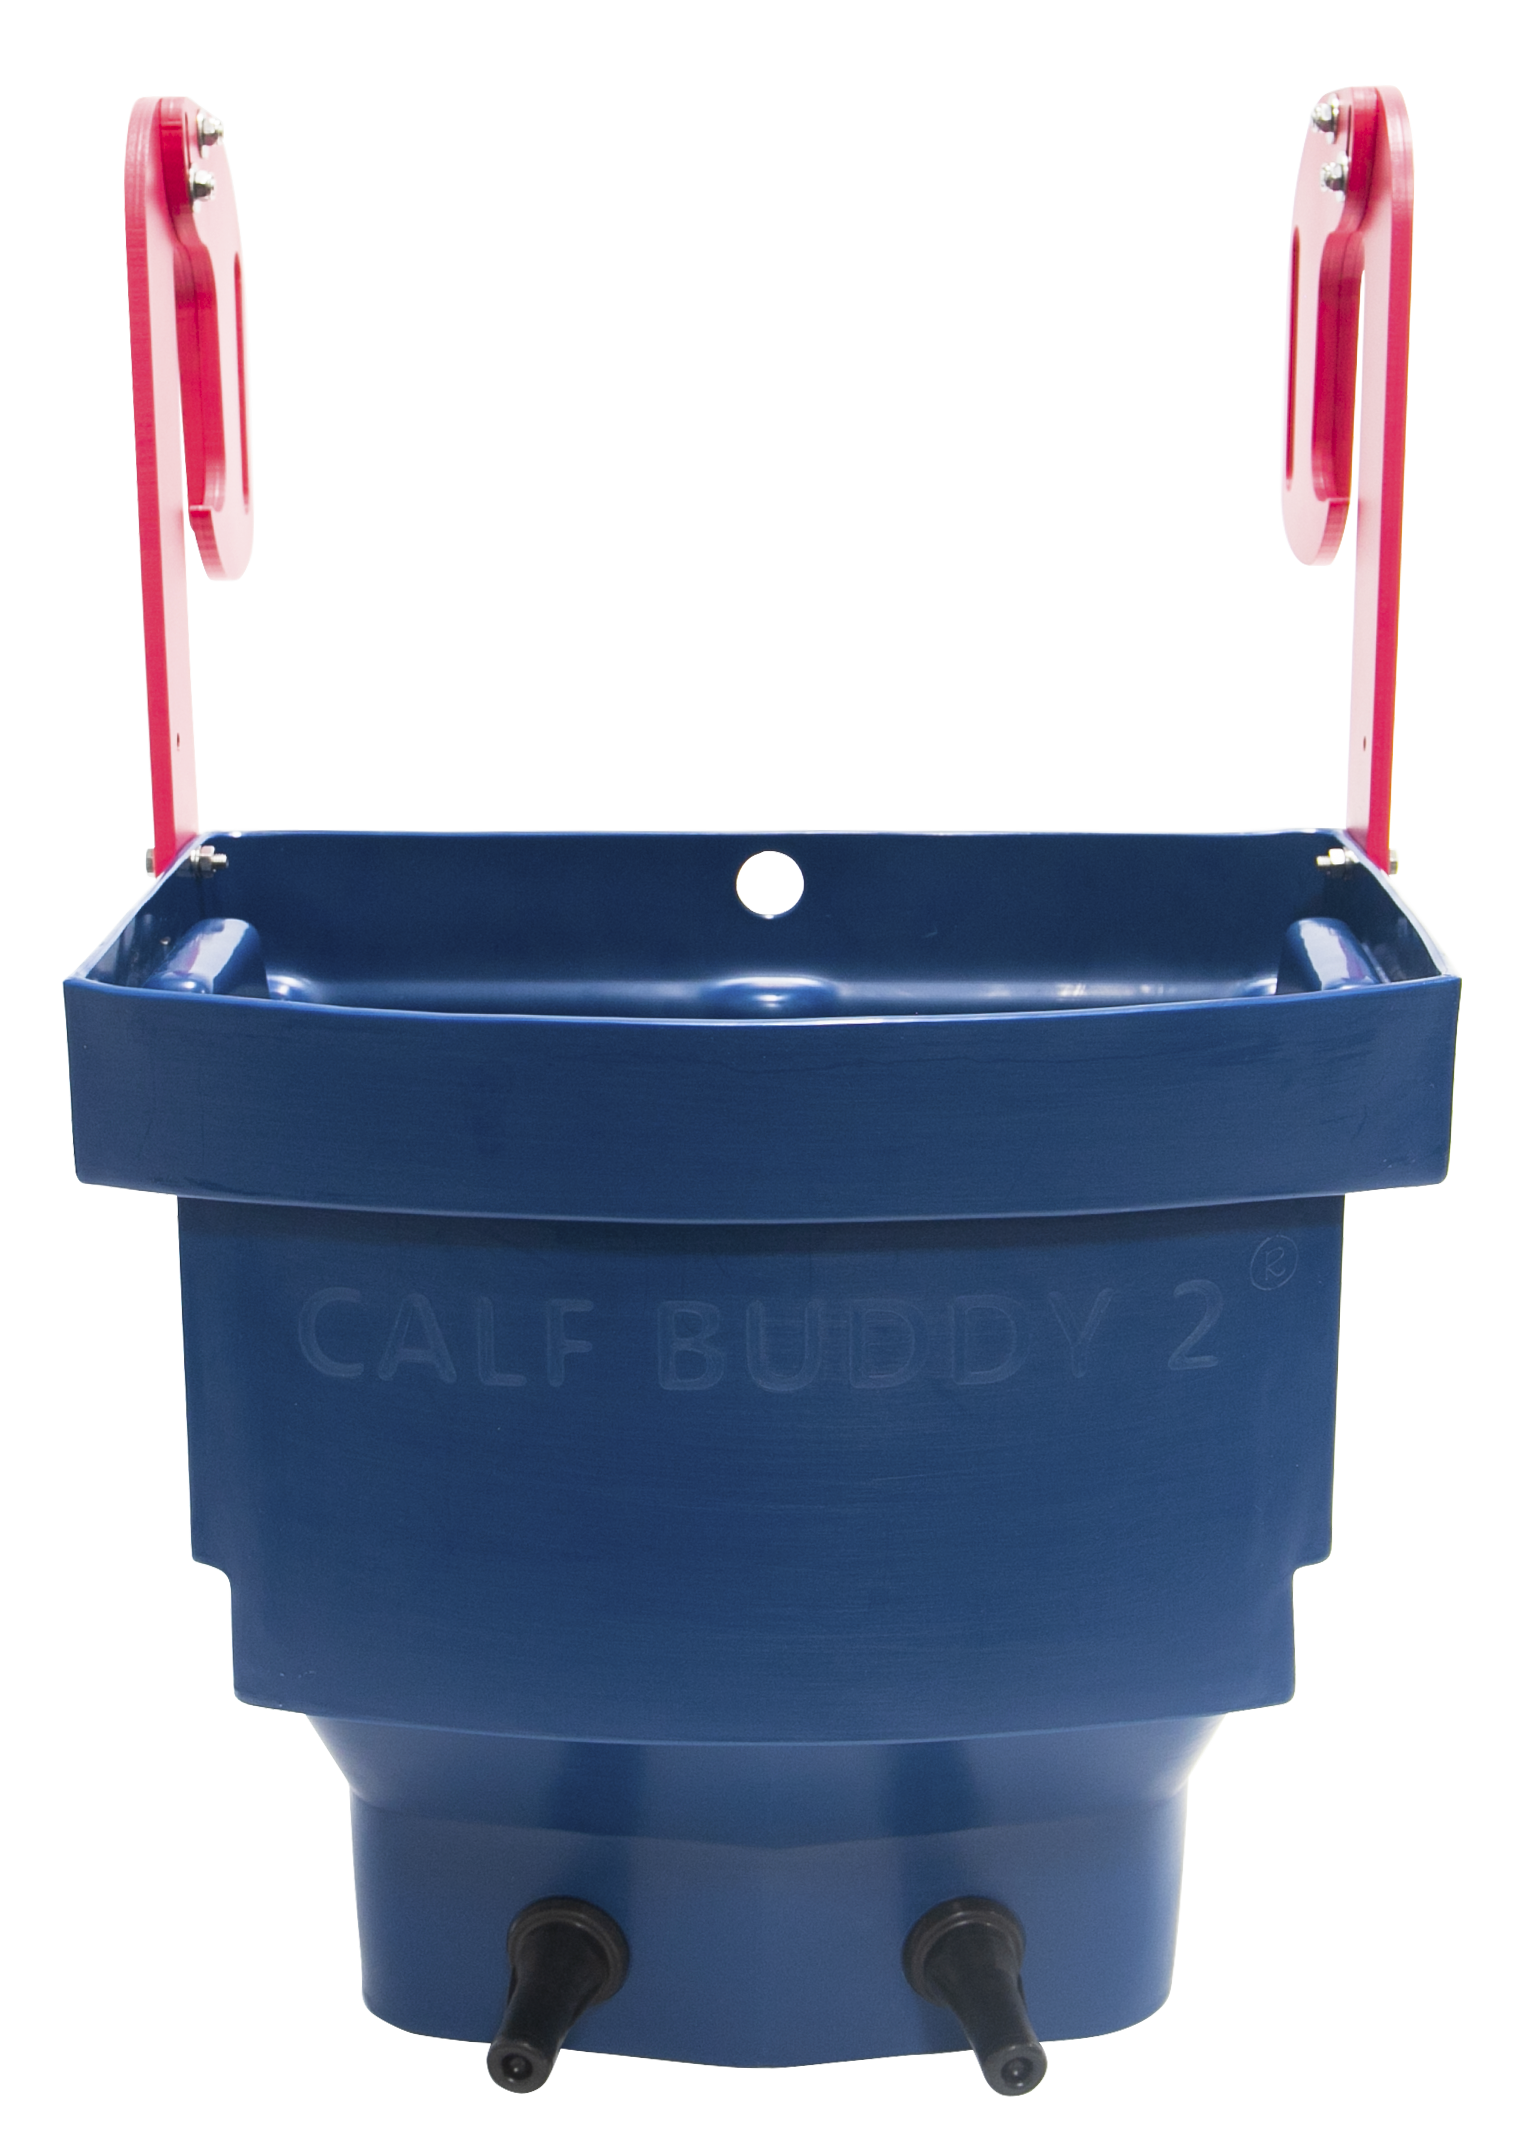 Calf Buddy™  2er 20 Liter